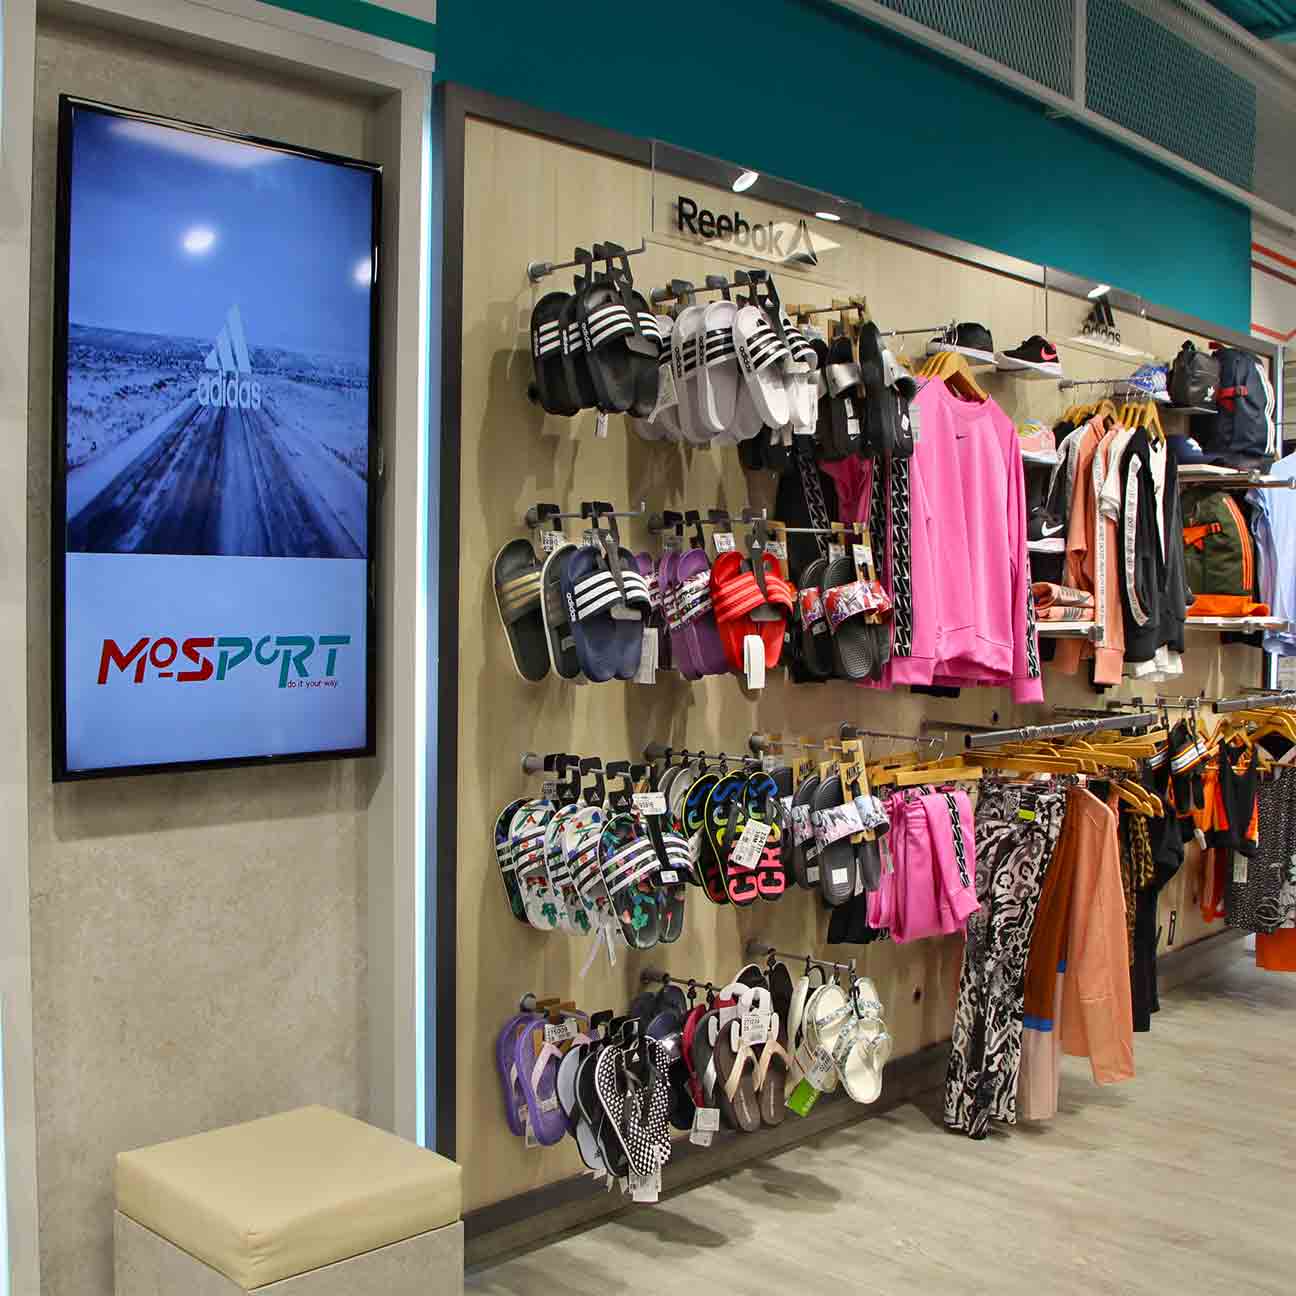 Tienda Mosport donde comprar ropa